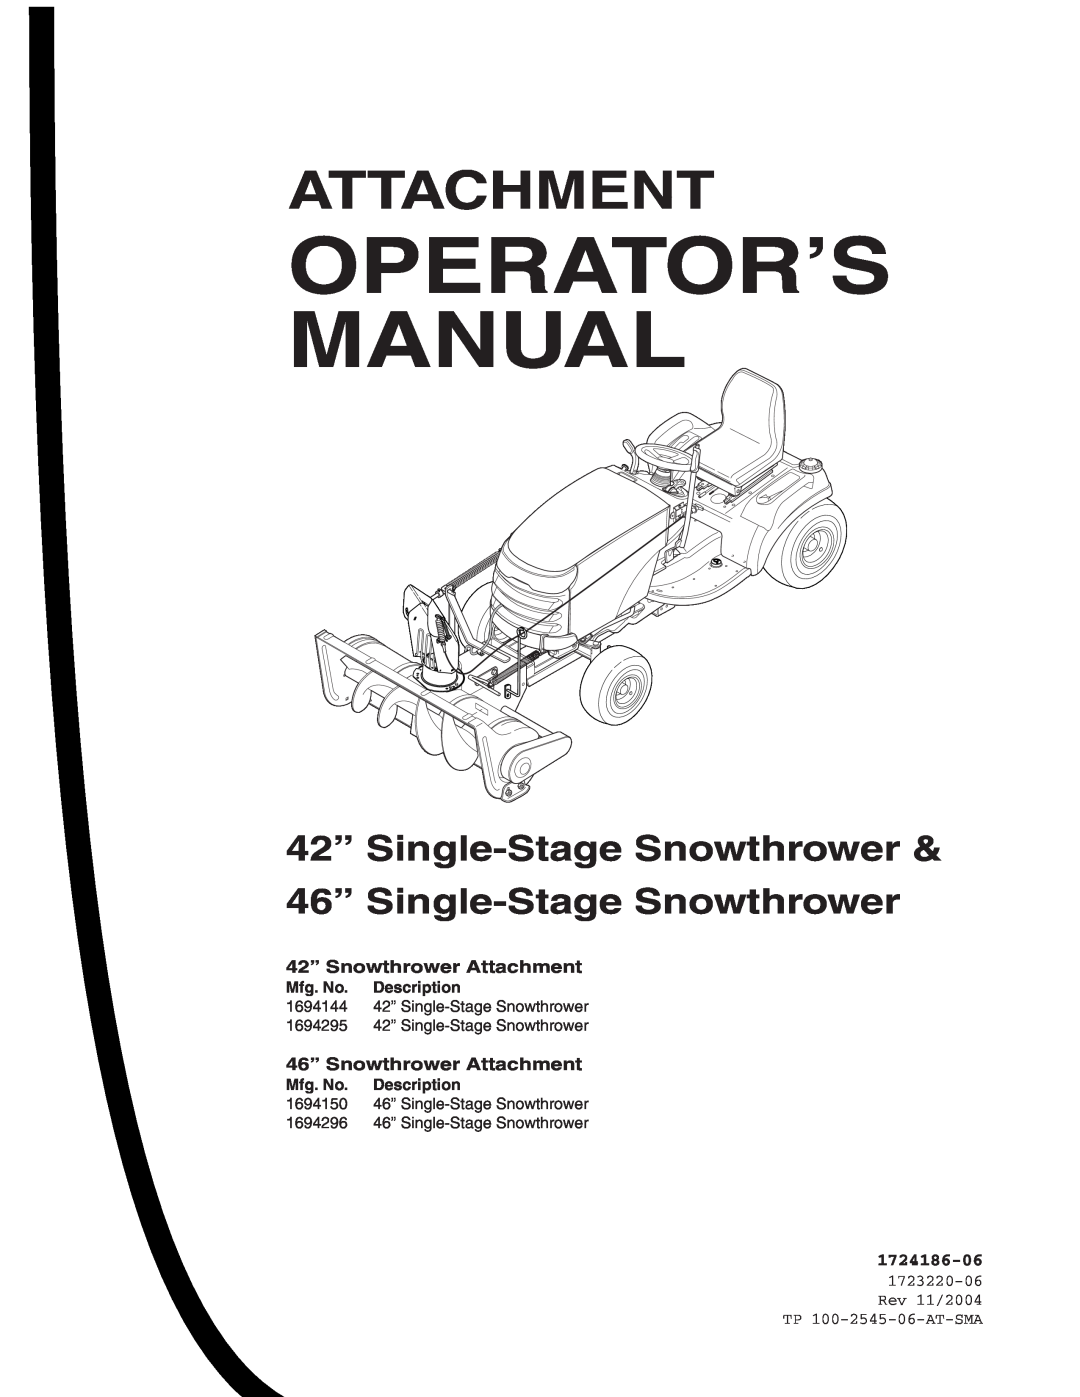 Snapper 1694144 manual Operator’S Manual, Attachment, 42” Single-Stage Snowthrower 46” Single-Stage Snowthrower, Mfg. No 